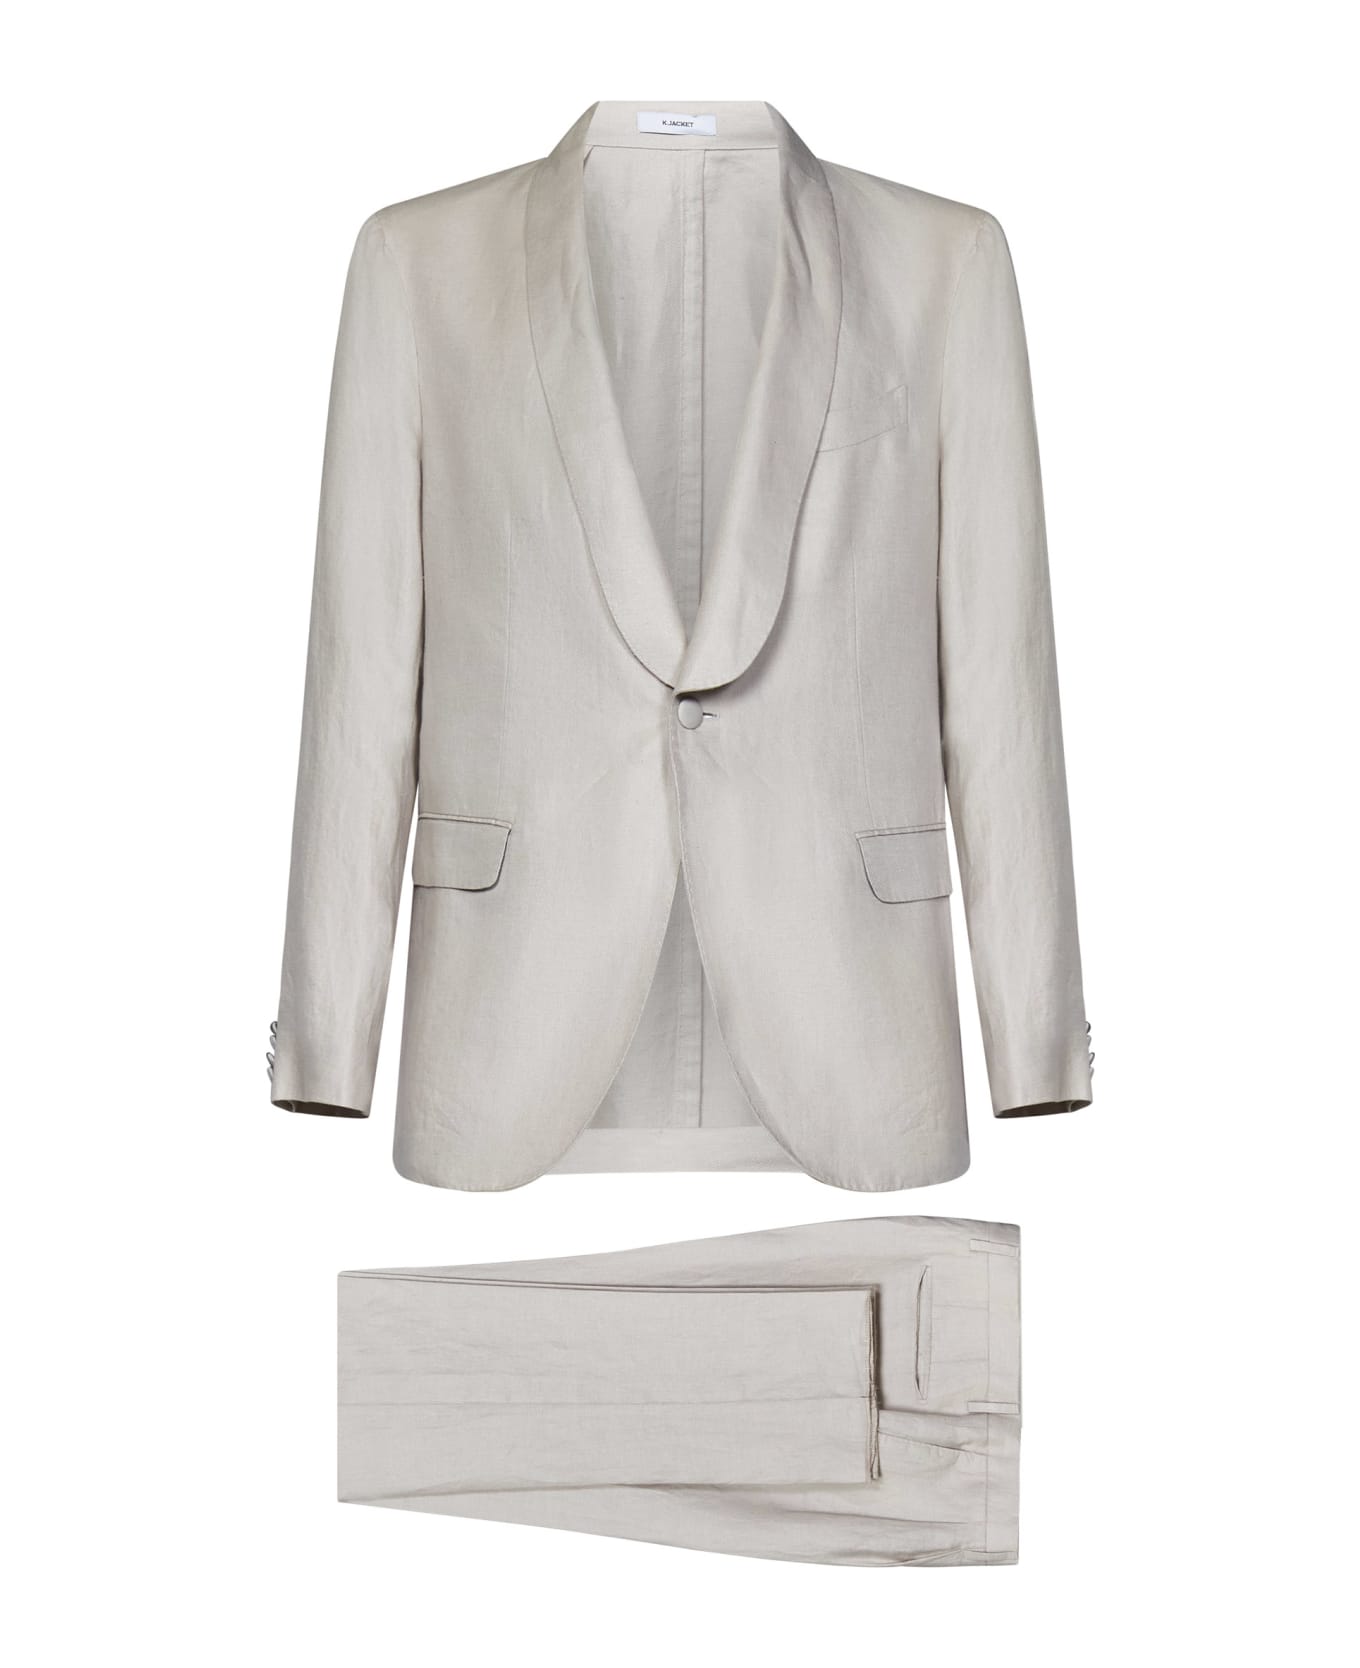 Boglioli Suit - White